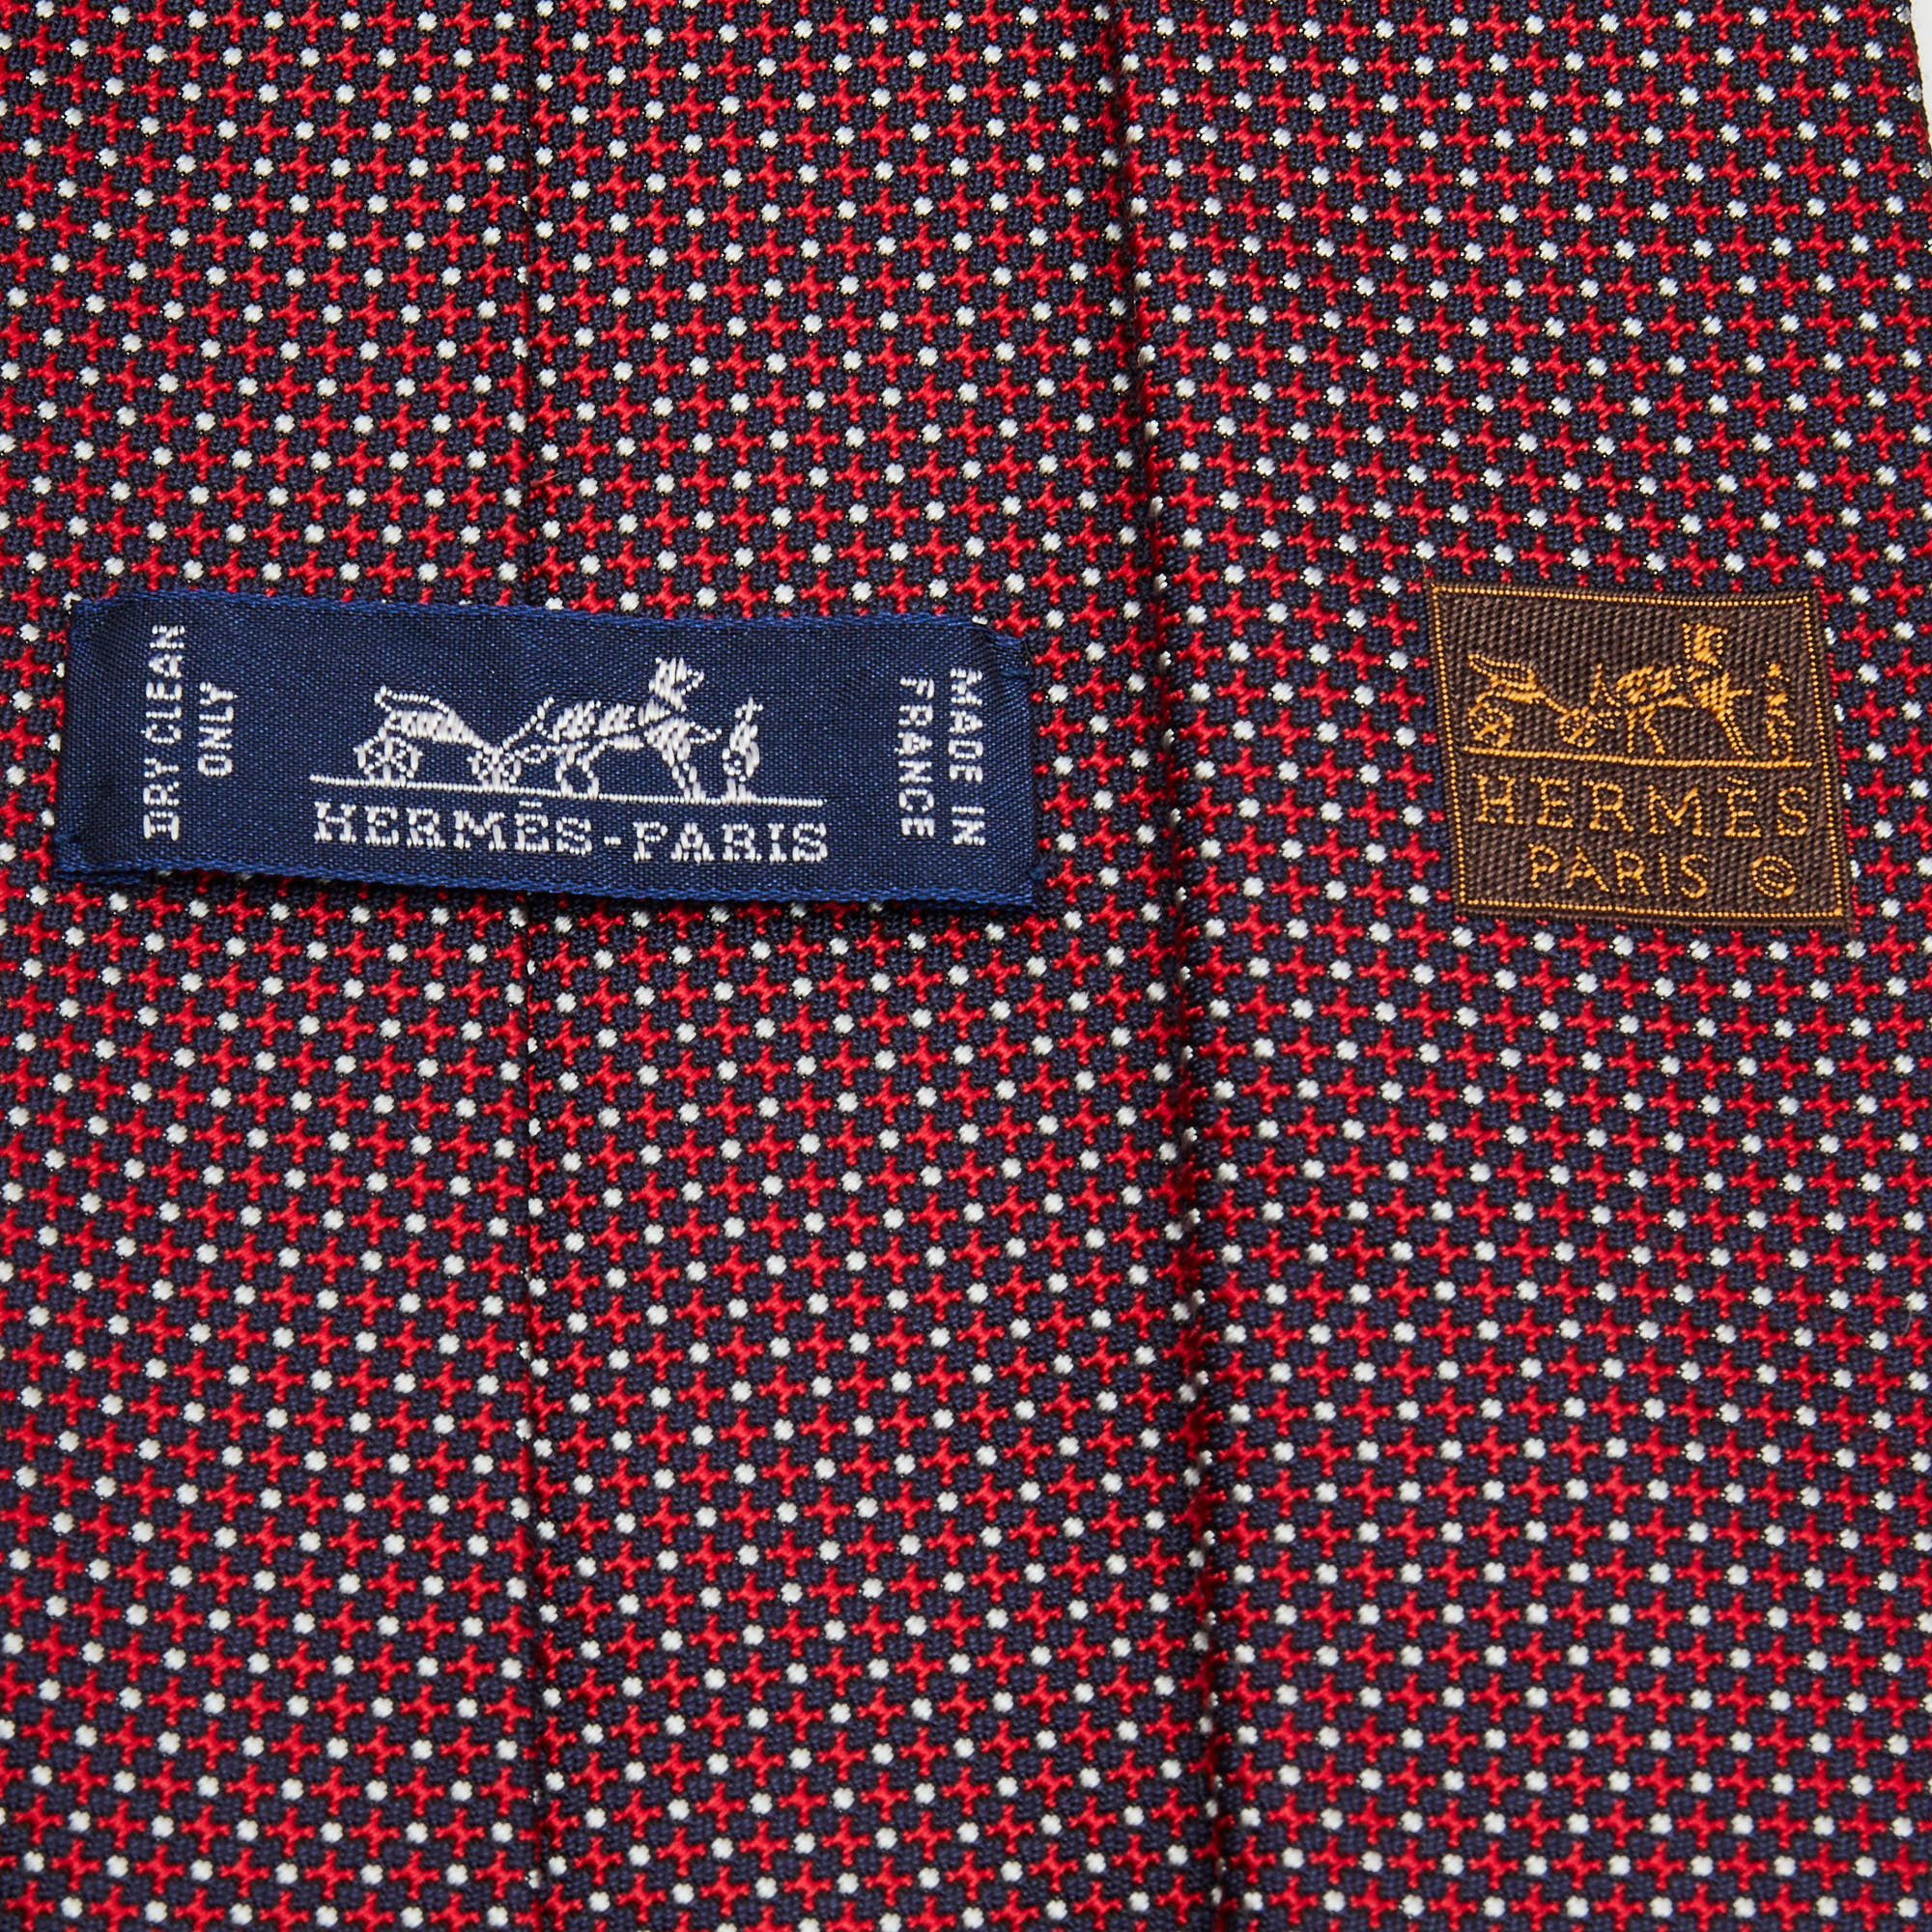 Hermes Red/Navy Blue Patterned Silk Tie